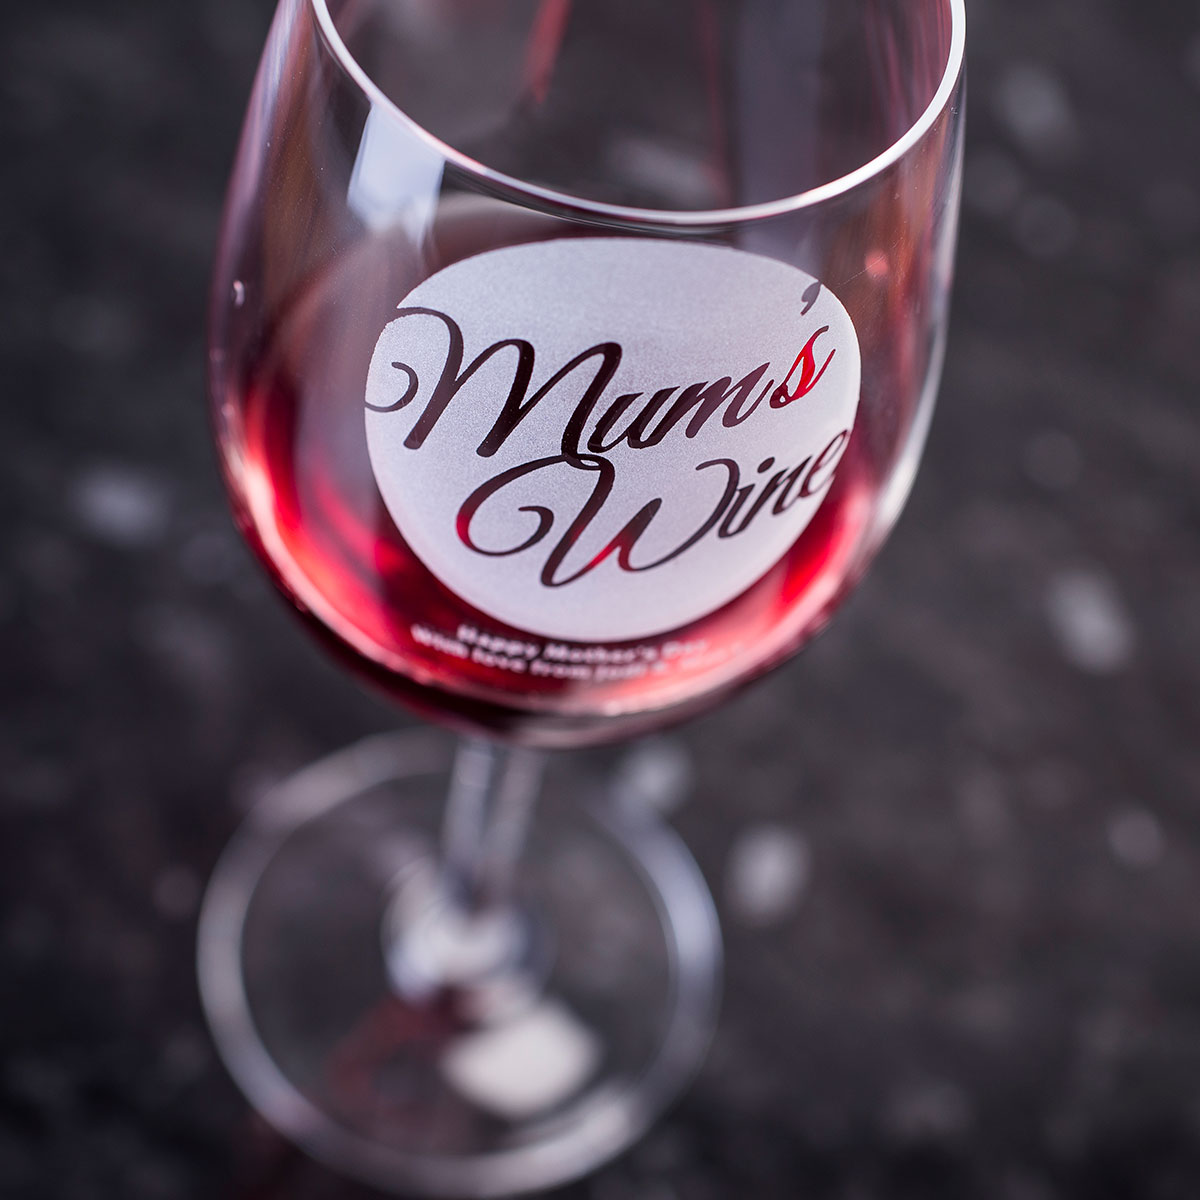 Personalised Wine Glass - Mum's Wine